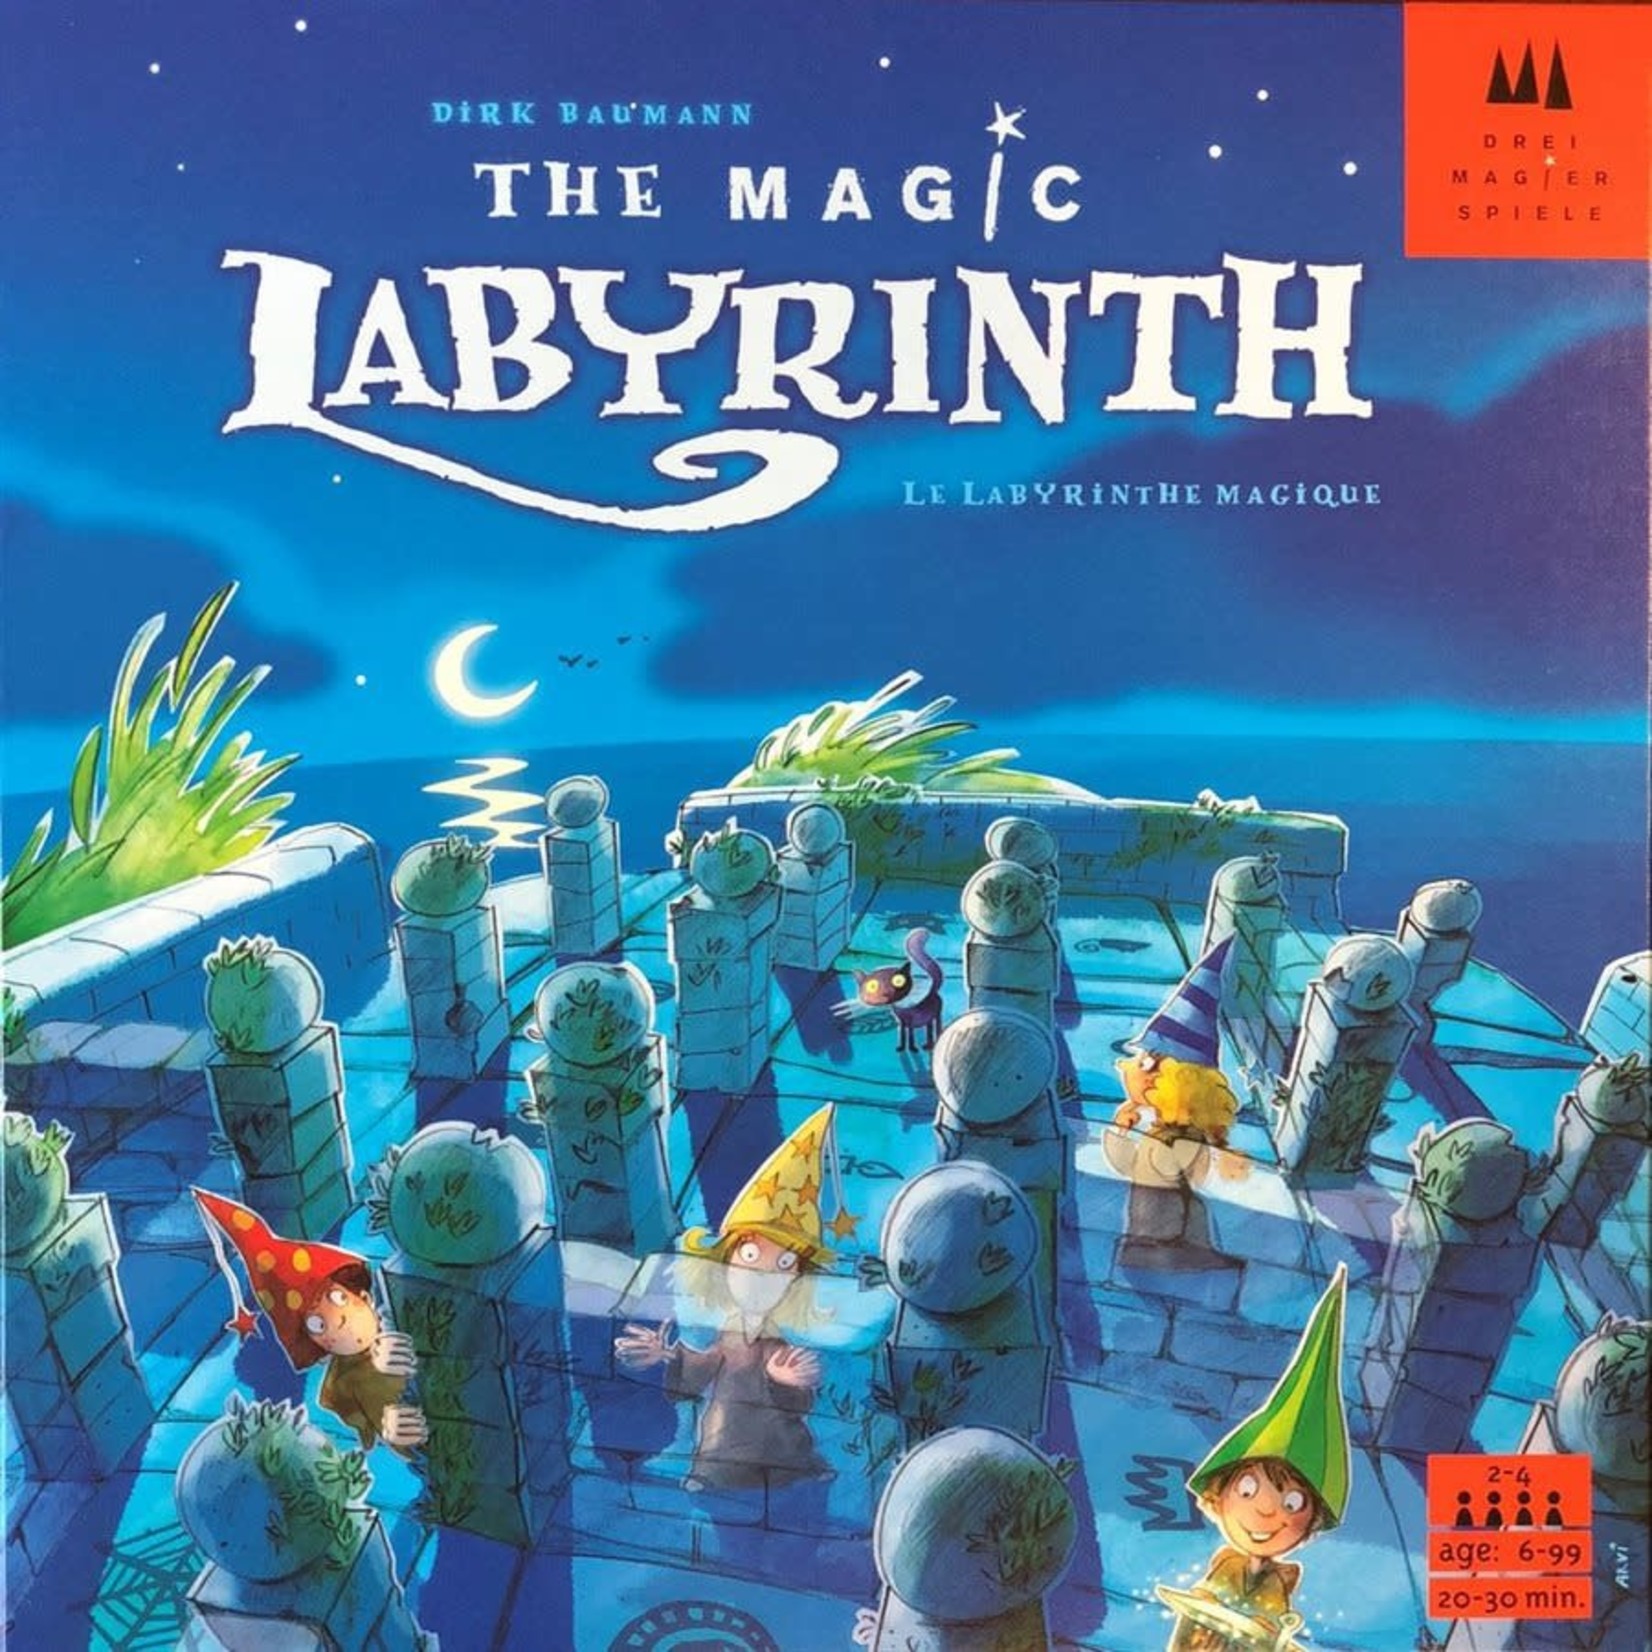 Schmidt Spiele Le labyrinthe magique (the magic Labyrinth)